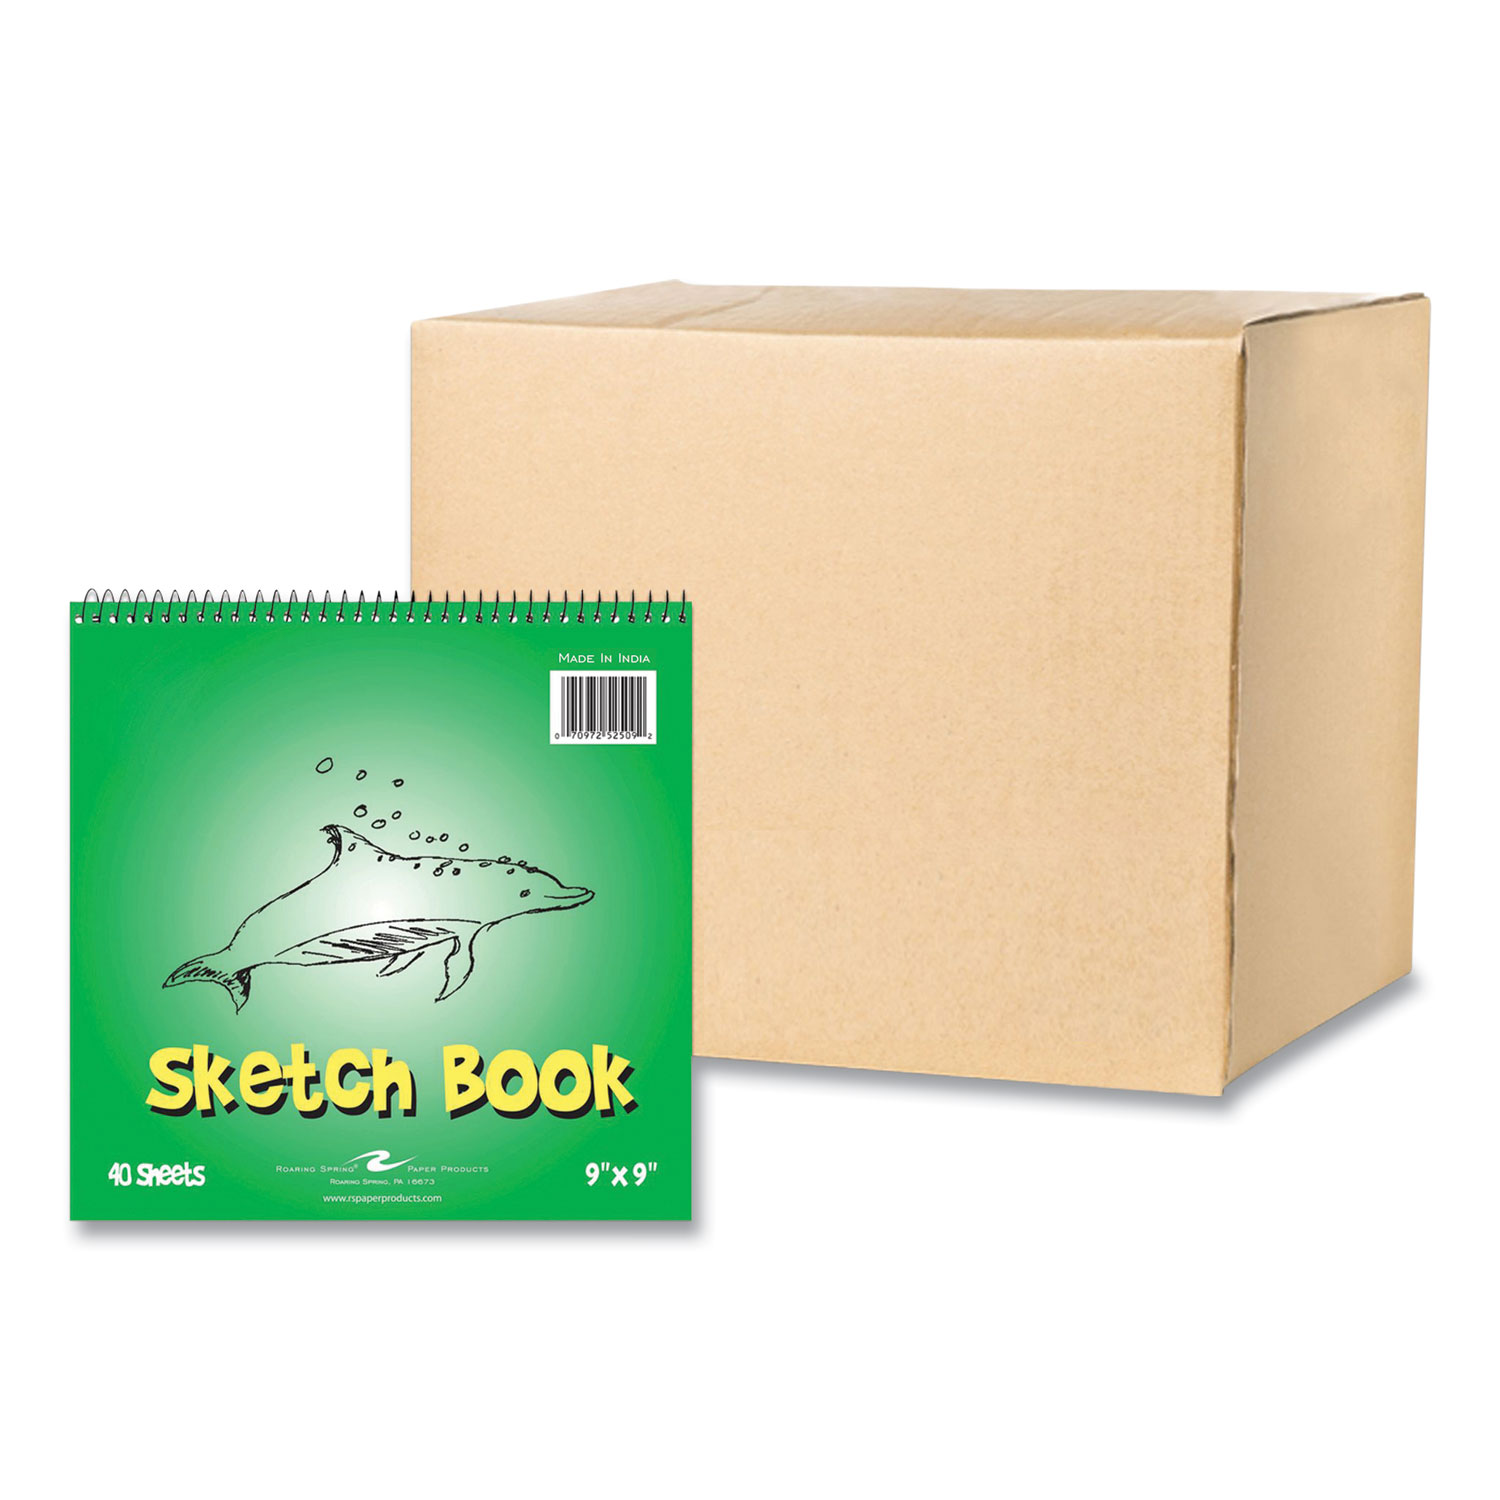 Kids Sketchbook - 9 x 9 - 40 Sheets - Case of 12